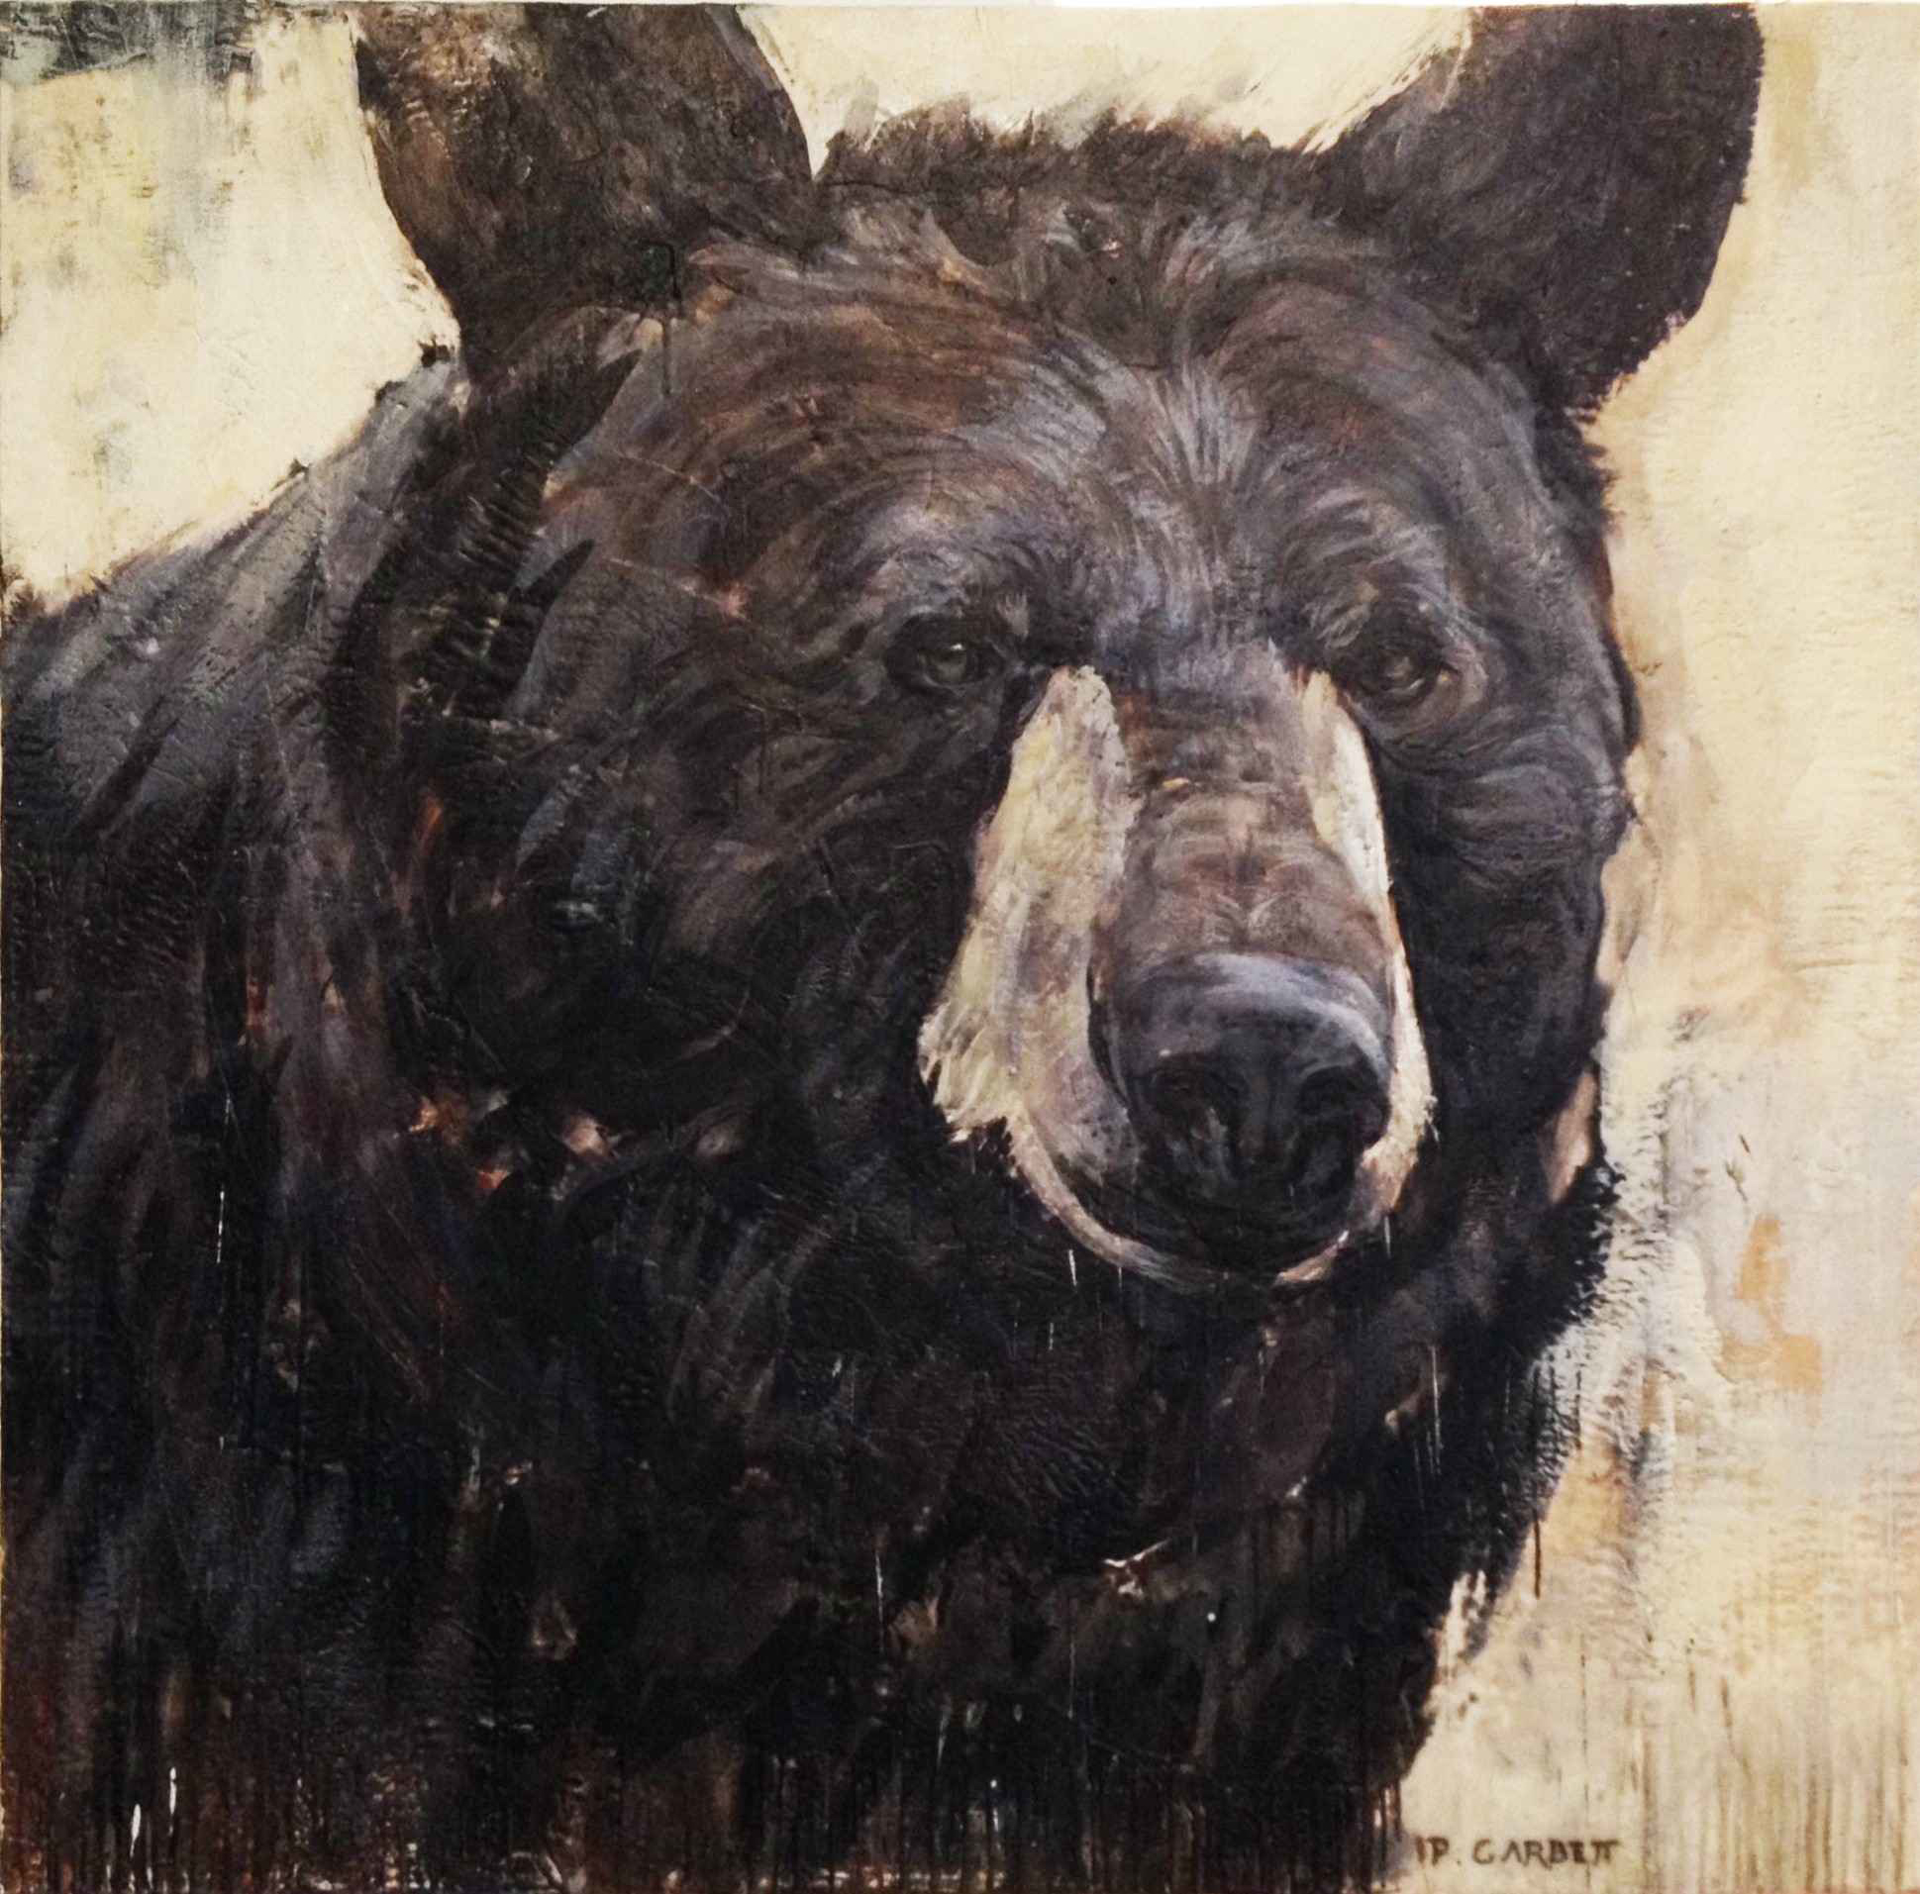 Bear Head #60-12 by Paul Garbett